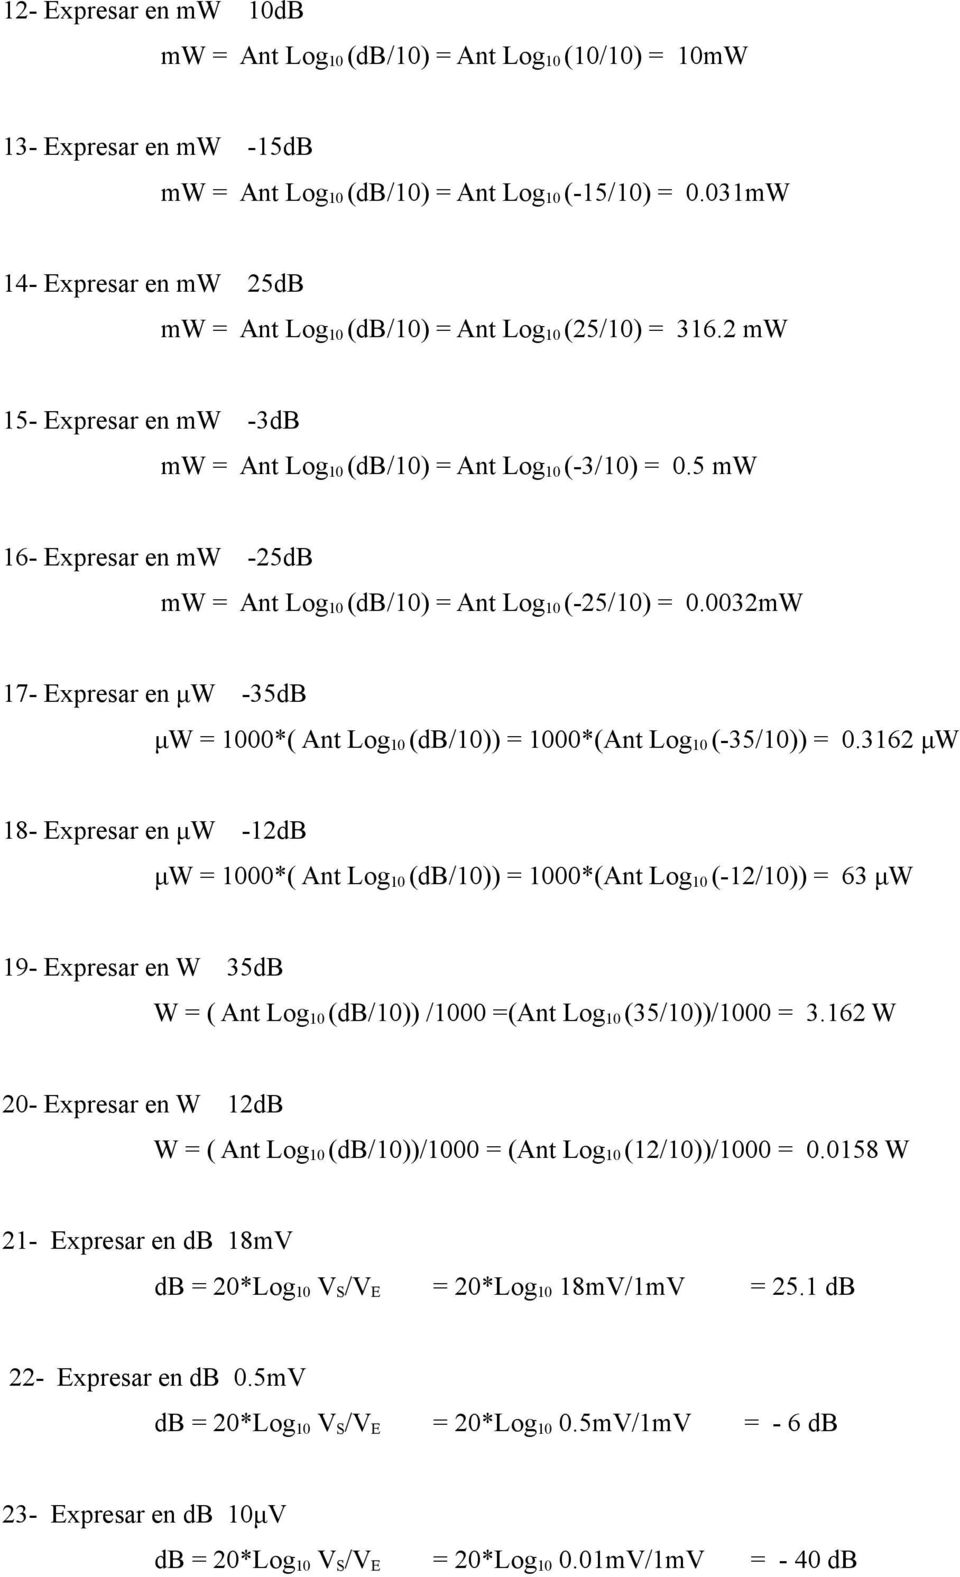 5 mw 16- Expresar en mw -25dB mw = Ant Log 10 (db/10) = Ant Log 10 (-25/10) = 0.0032mW 17- Expresar en μw -35dB μw = 1000*( Ant Log 10 (db/10)) = 1000*(Ant Log 10 (-35/10)) = 0.